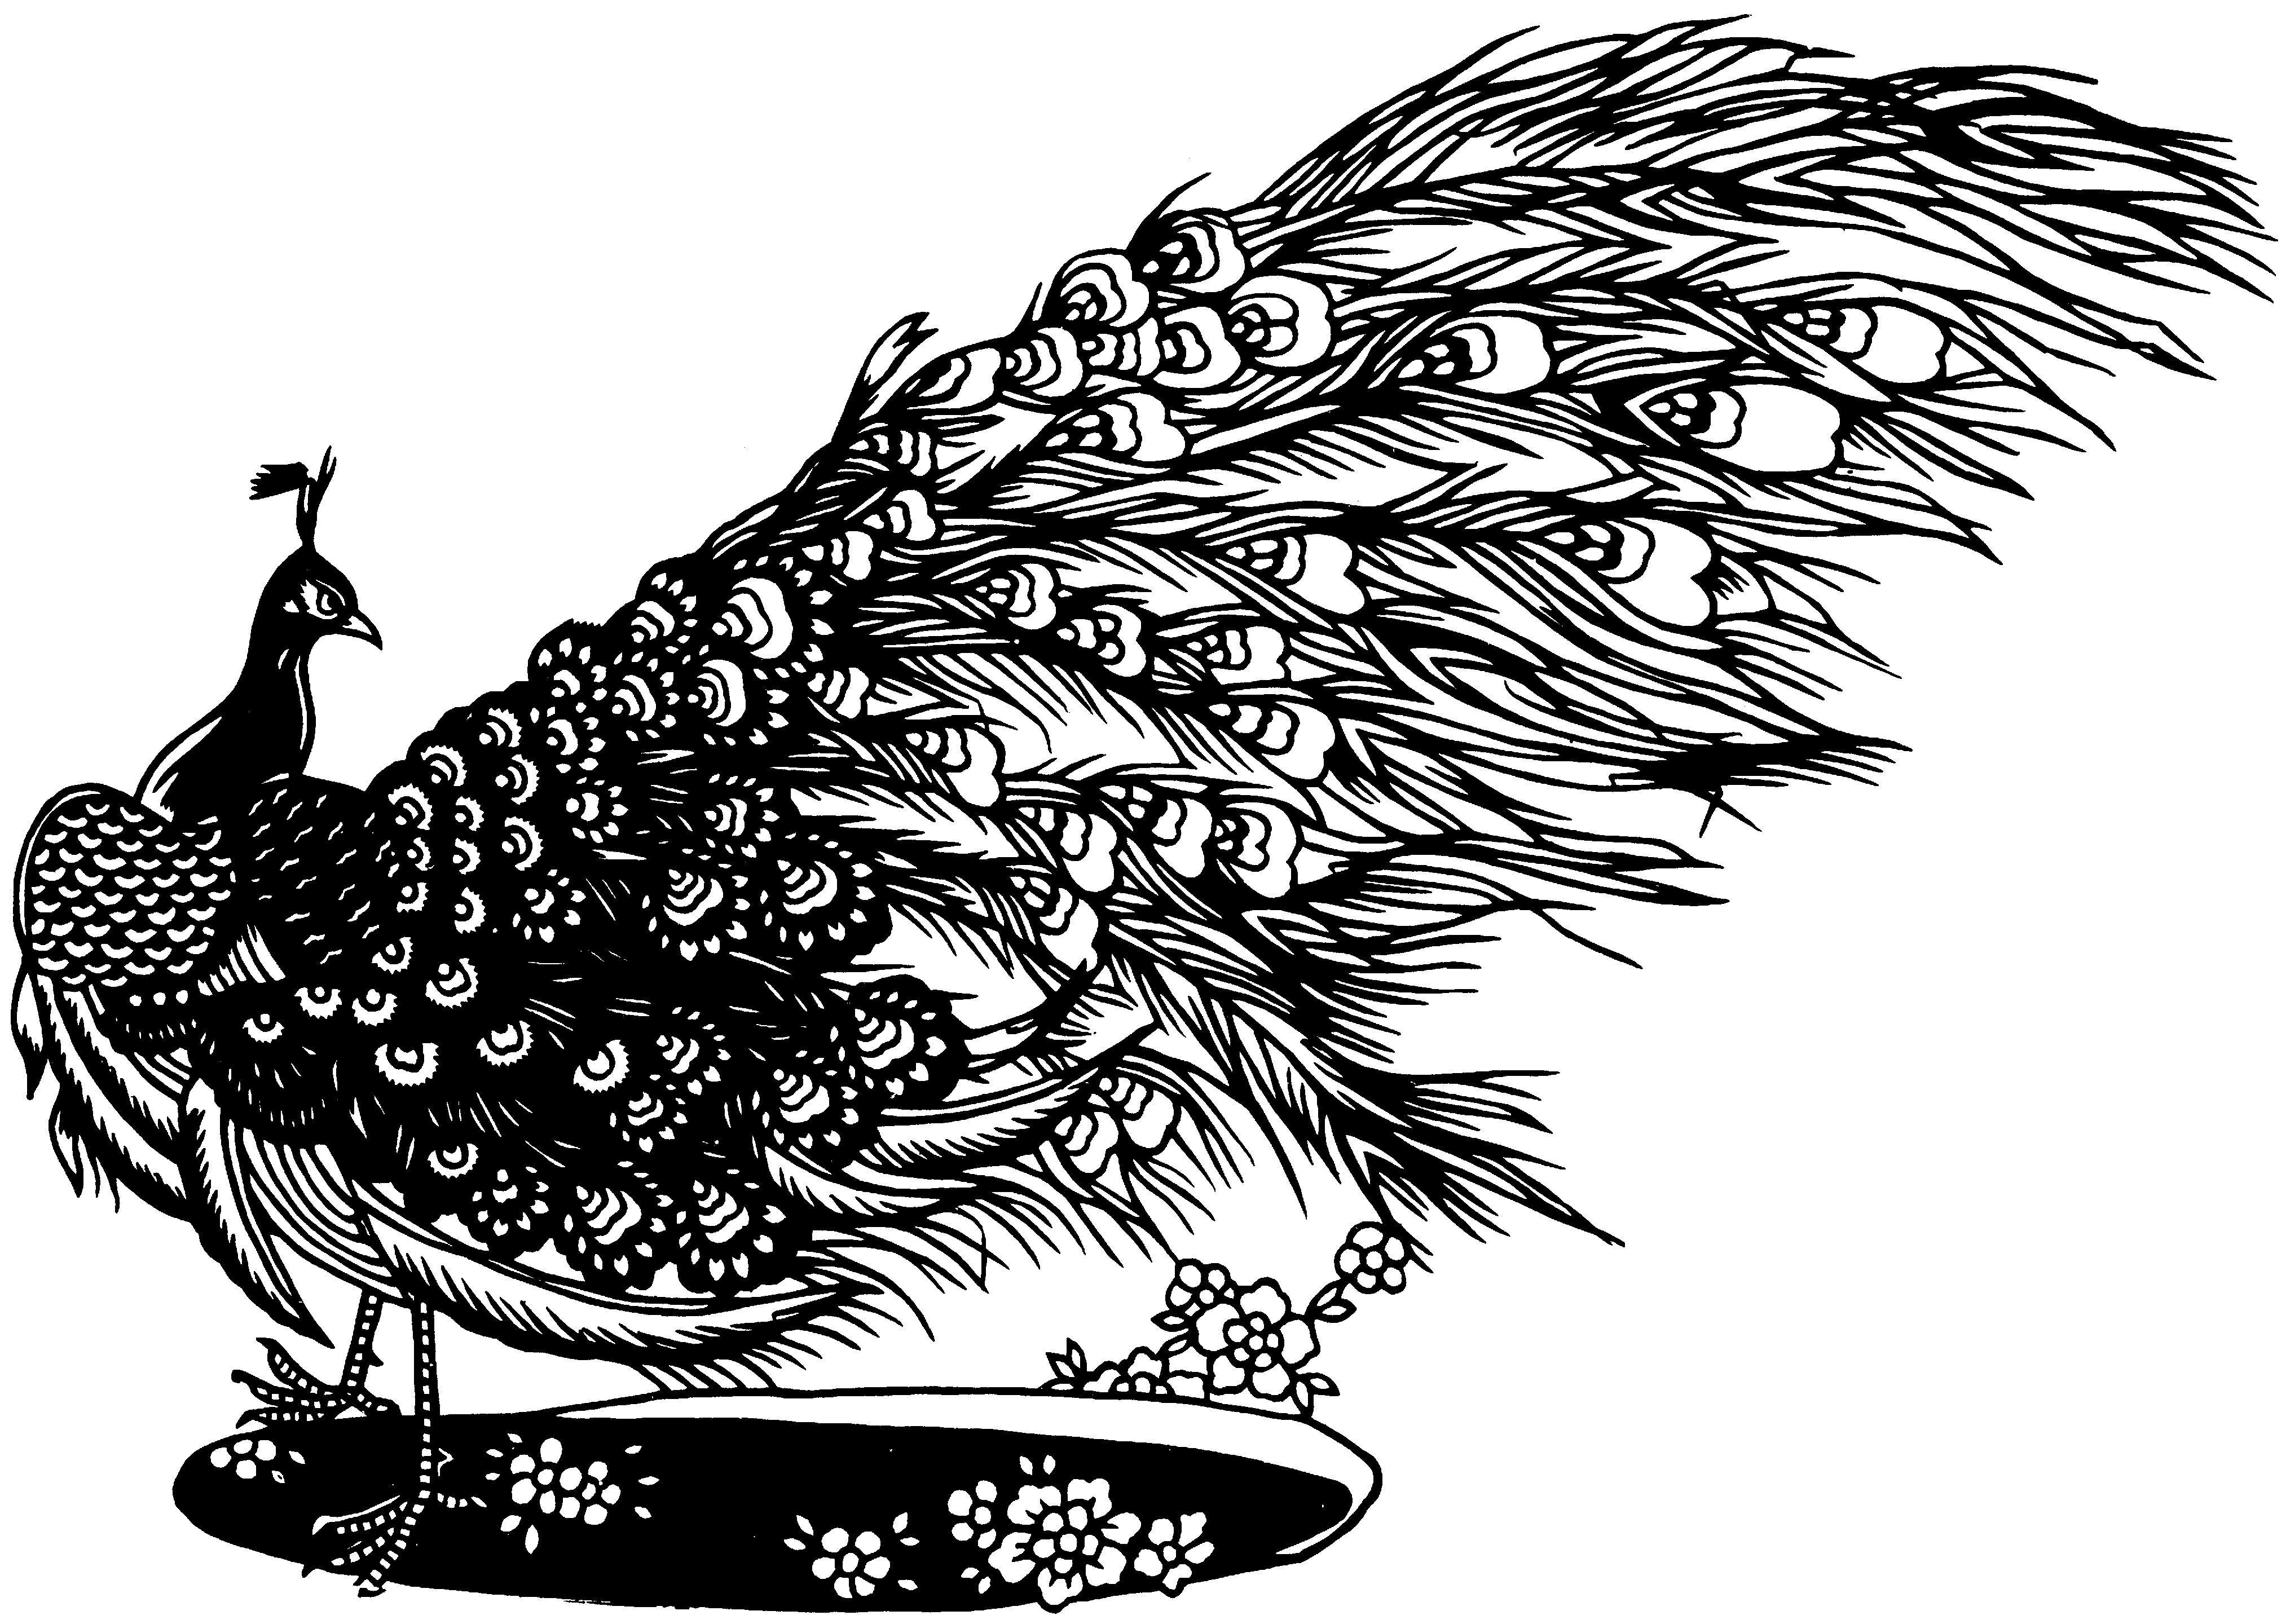 Pencil Sketch Peacock Drawing